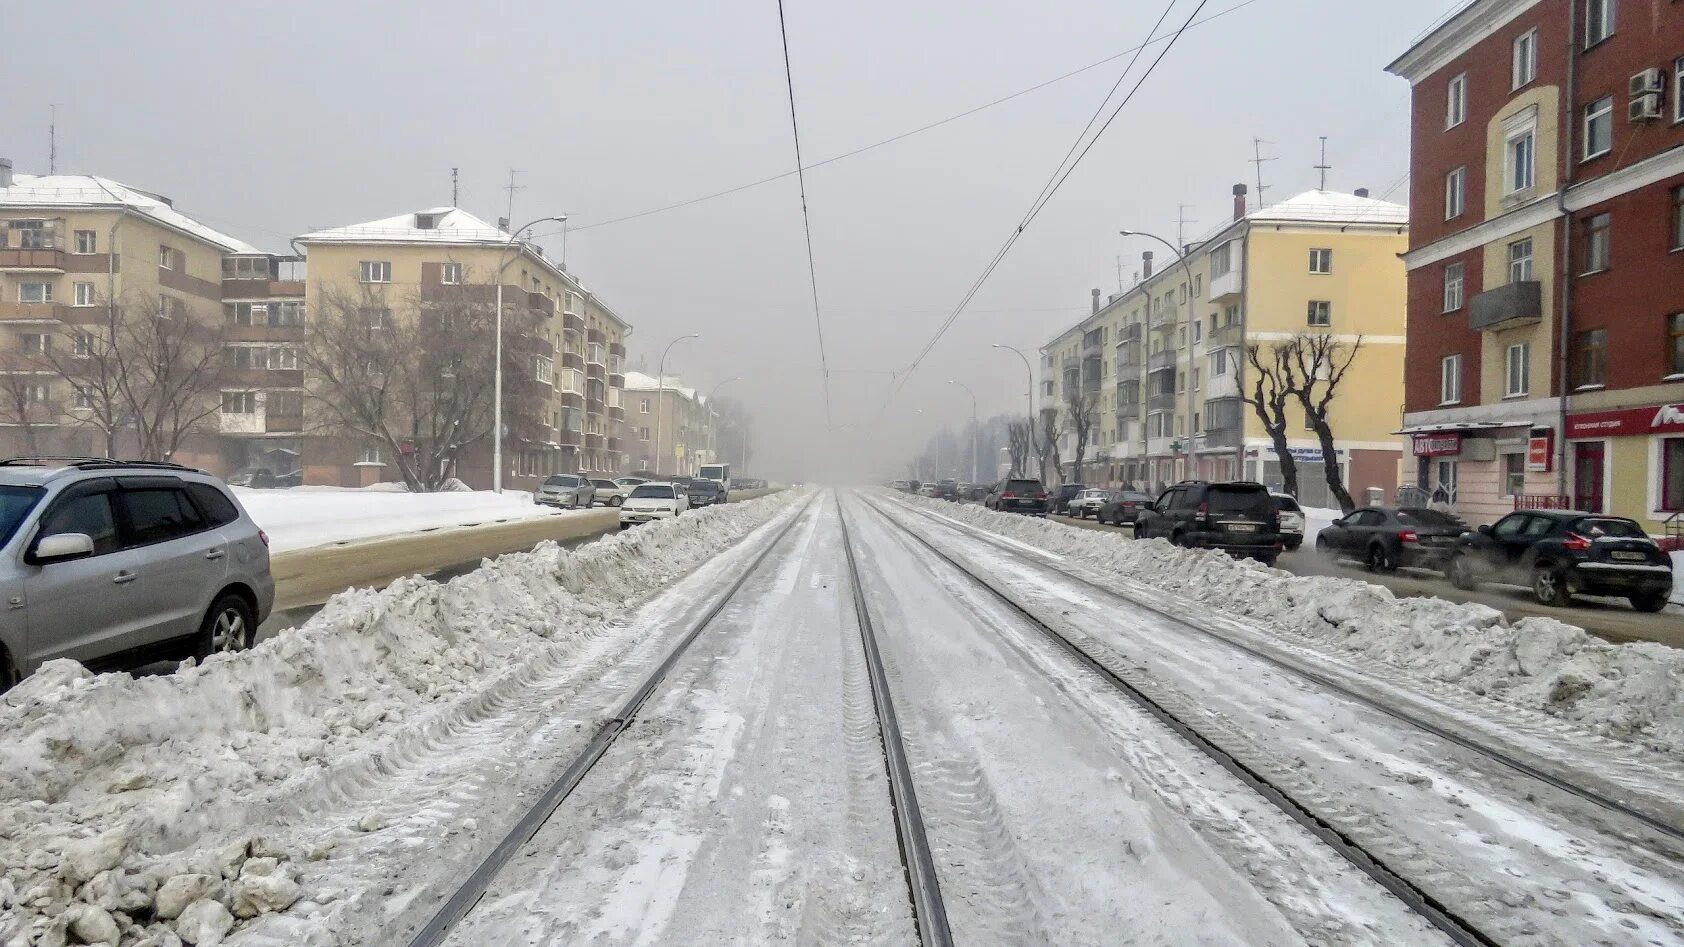 Г кемерово зимняя. Кемерово зима. Кемерово зимой. Кемерово снег набережная. Кемерово зимой улицы.